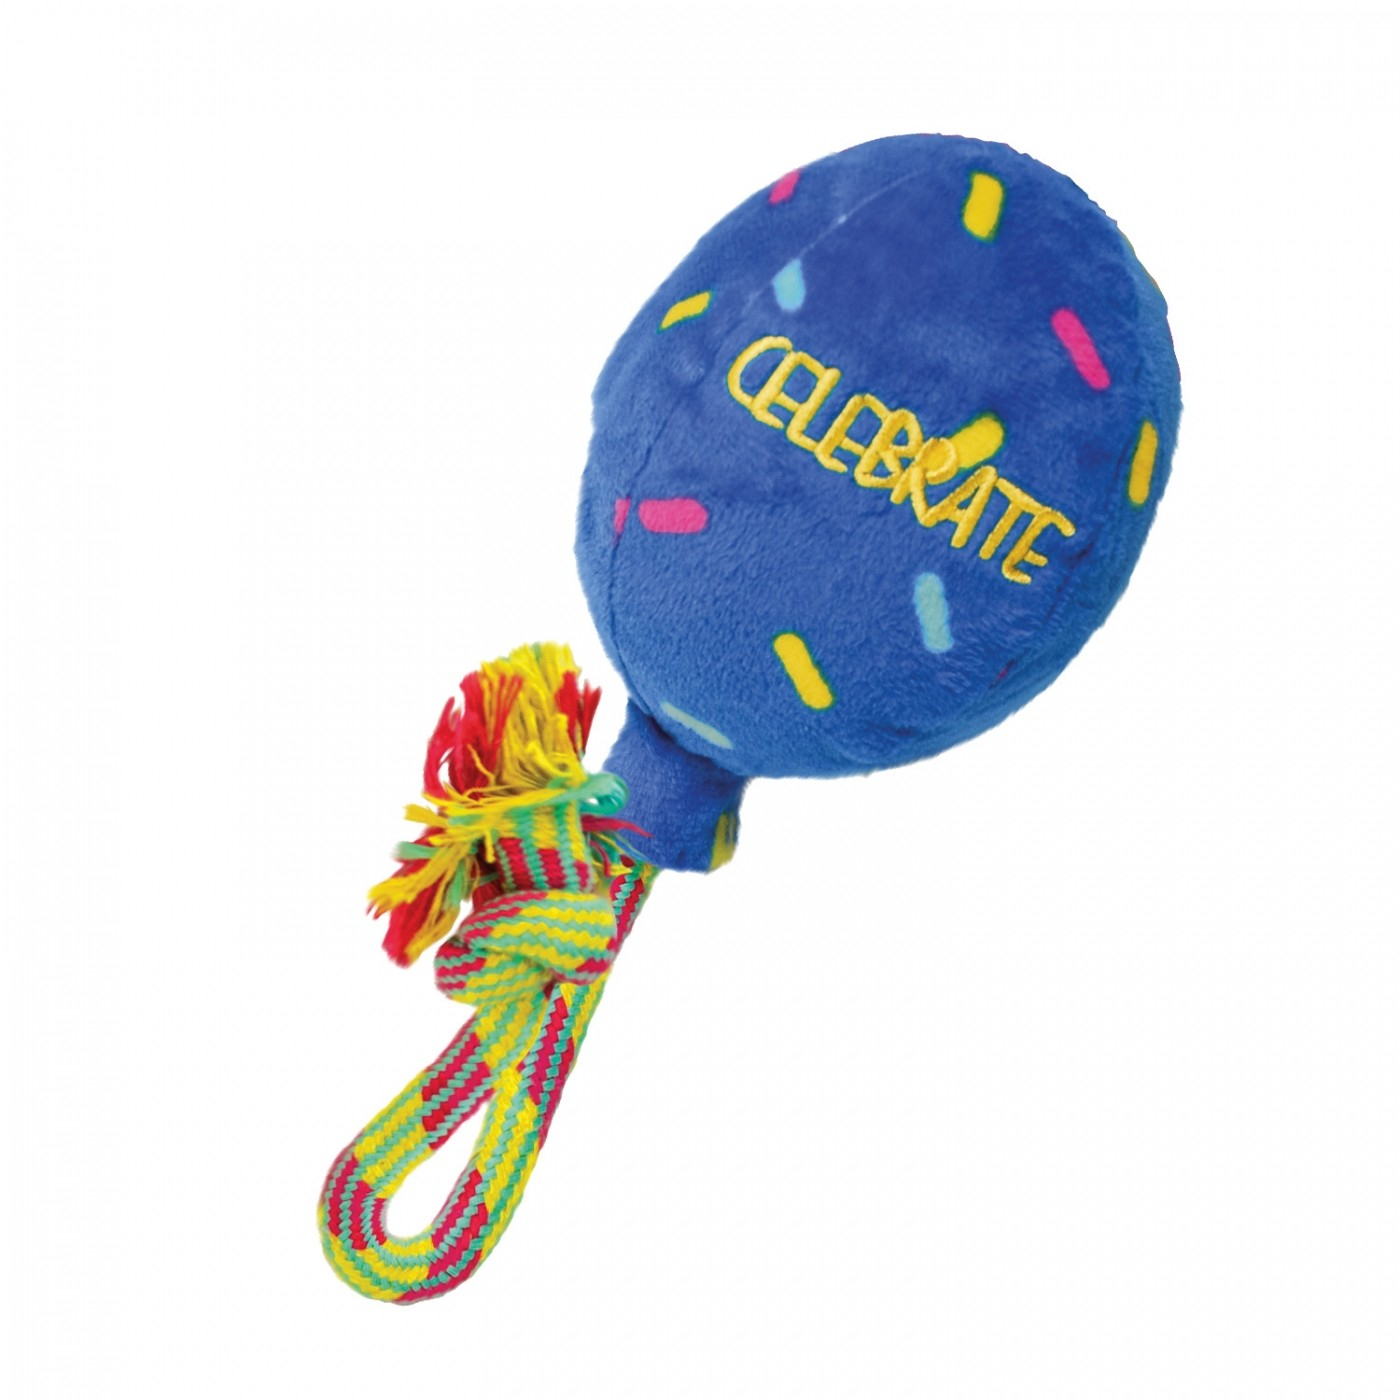 KONG Spielzeug zum Apportieren für Hunde Occasions Birthday Balloon Blue balloon